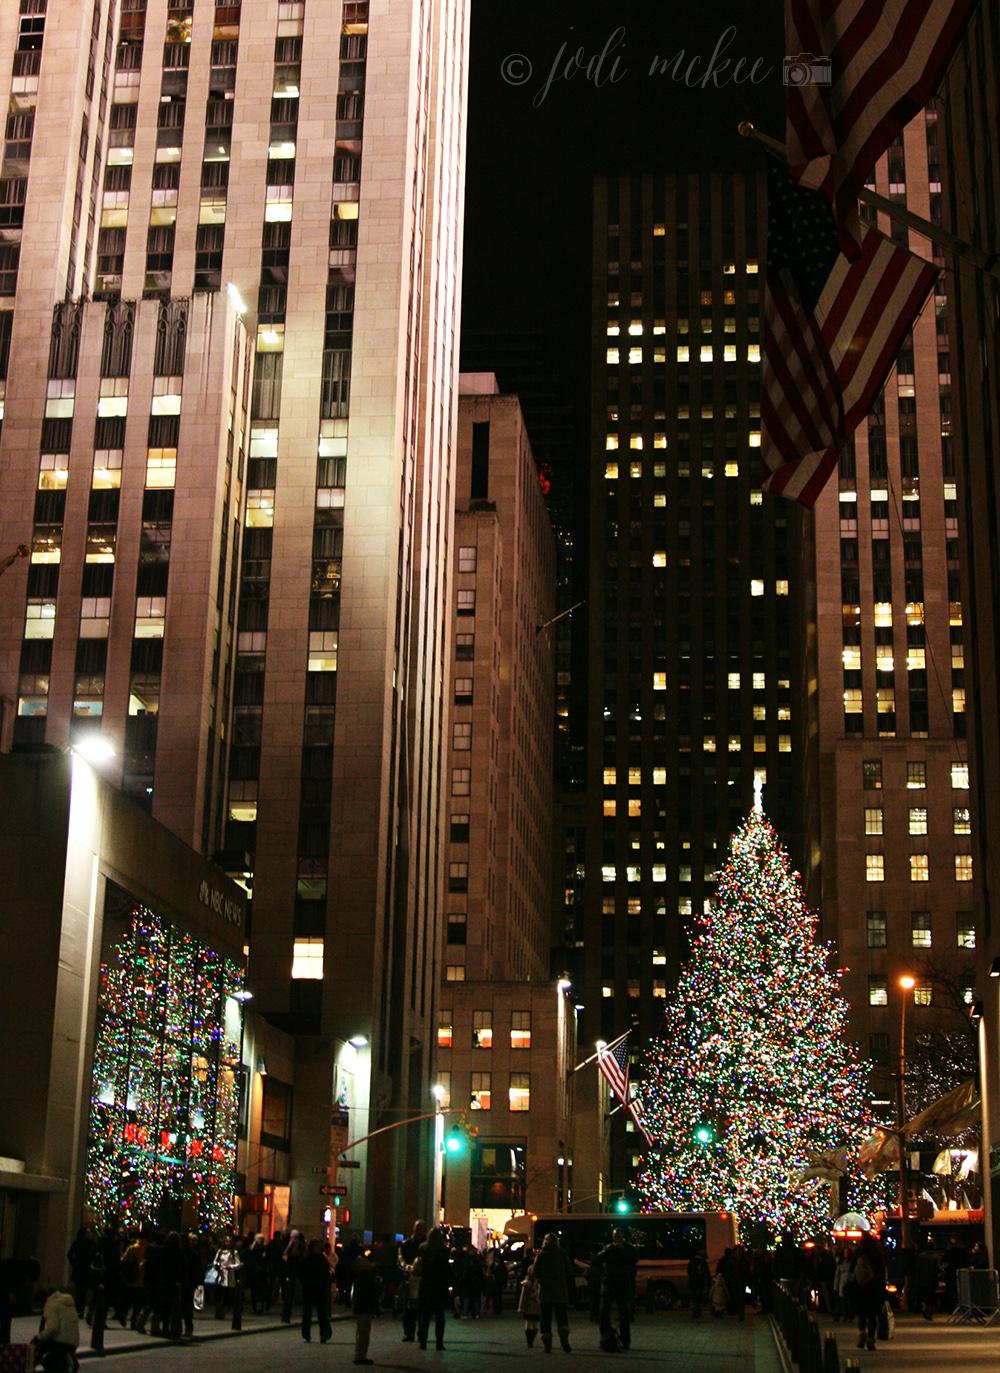 Rockefeller Center Christmas Tree, New York City It's